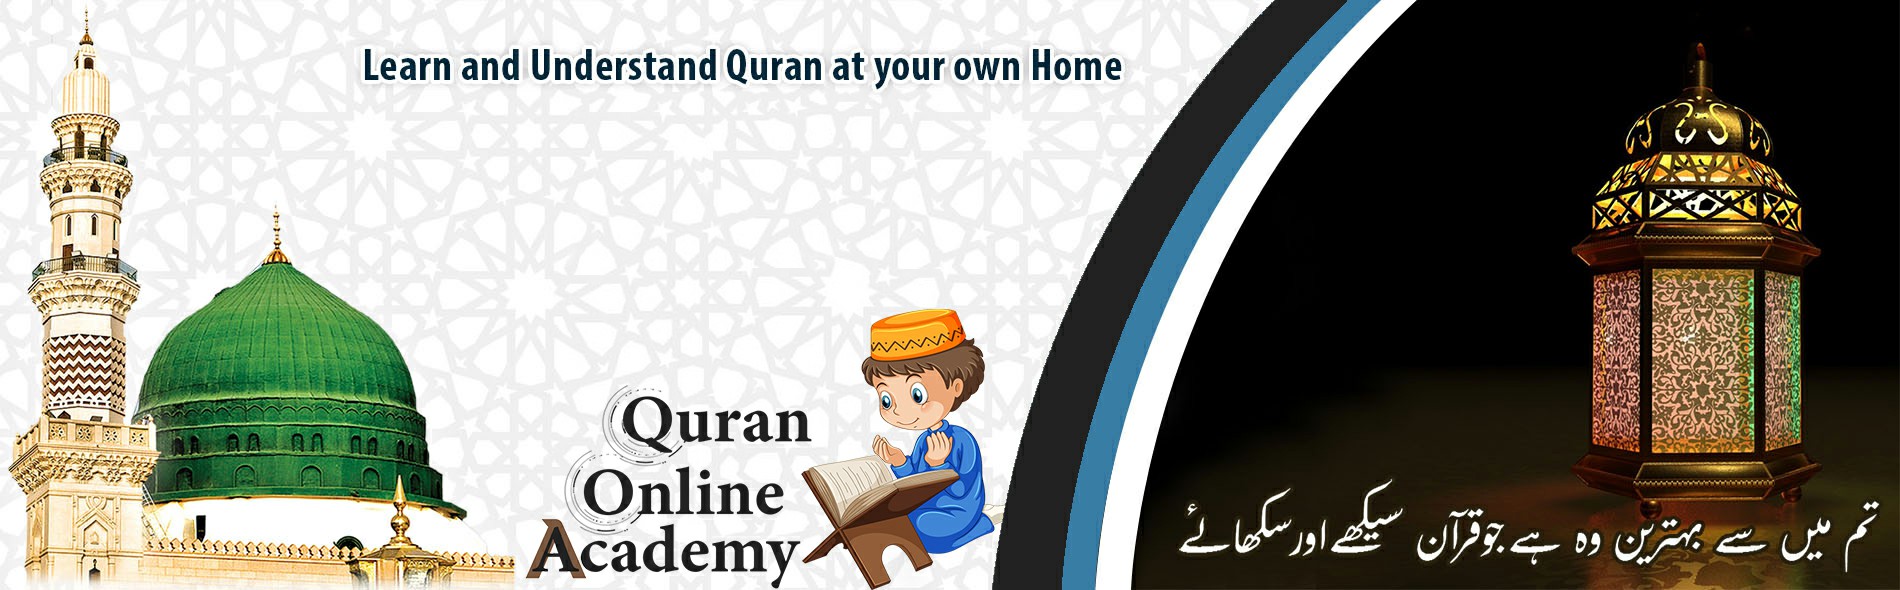 Academy of Quran Studies BELGIUM